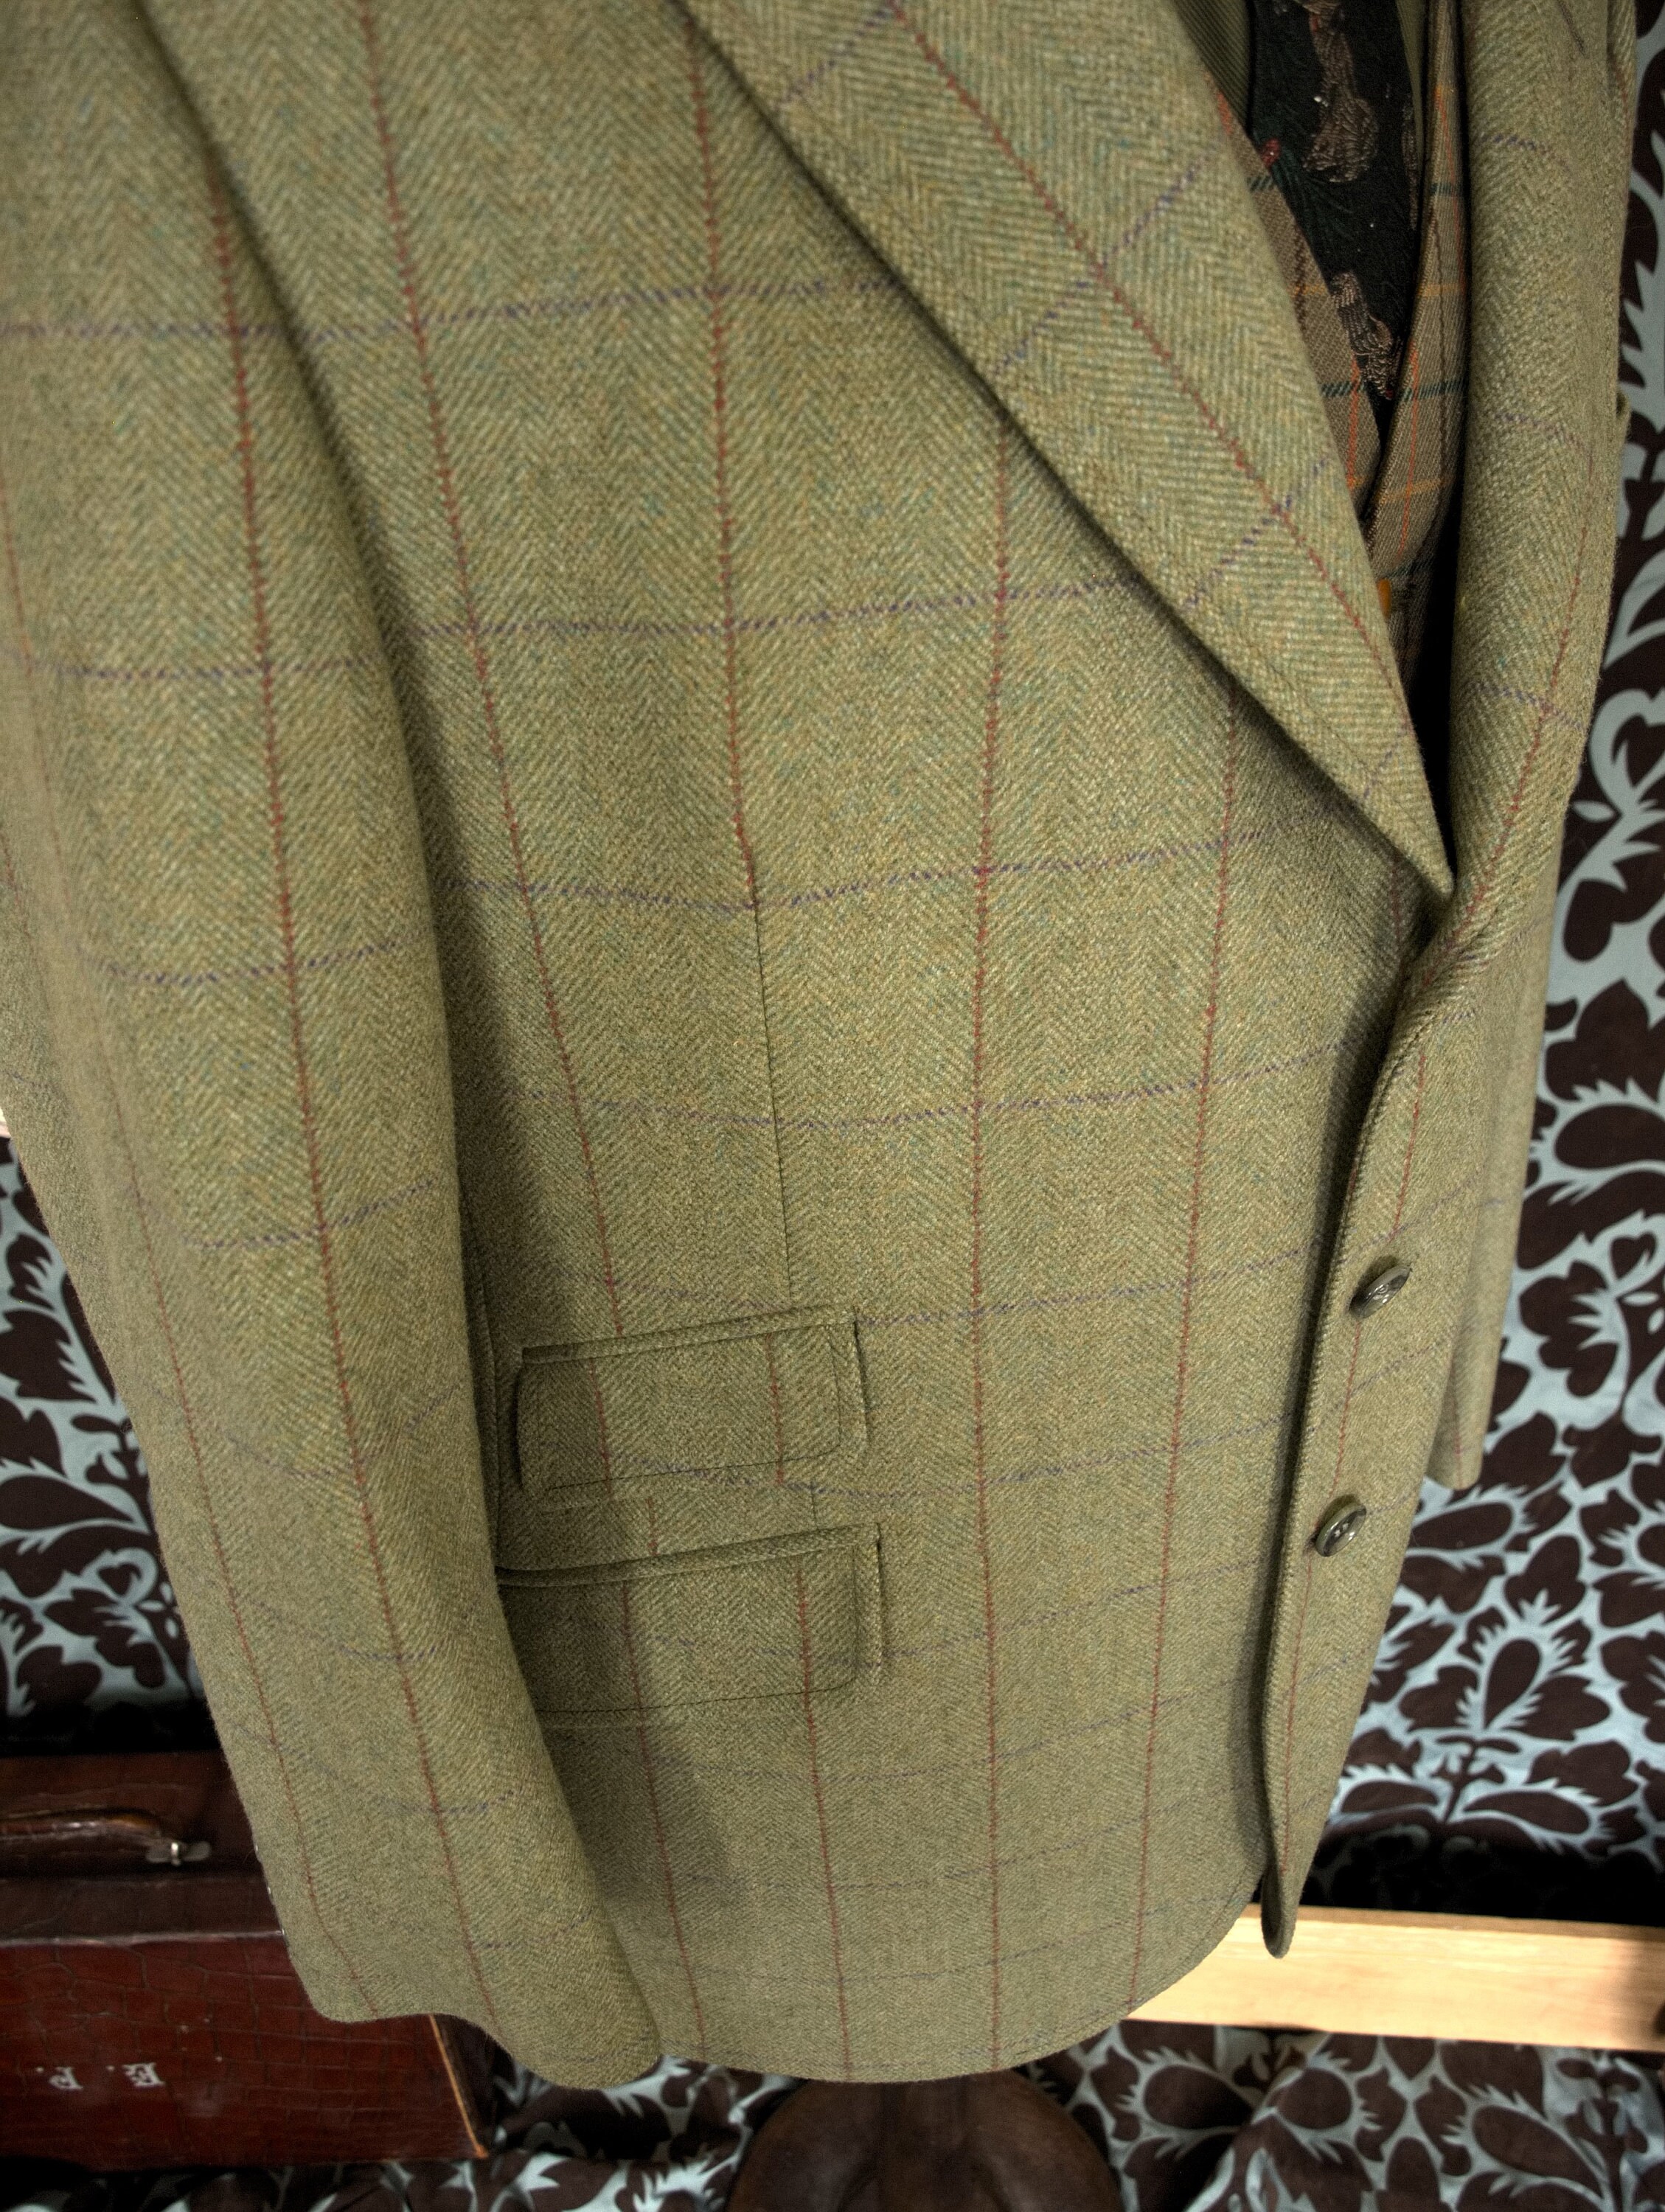 Superb Tweed Mens Bladen Essex Hacking Jacket in a size 40 inch Medium ...